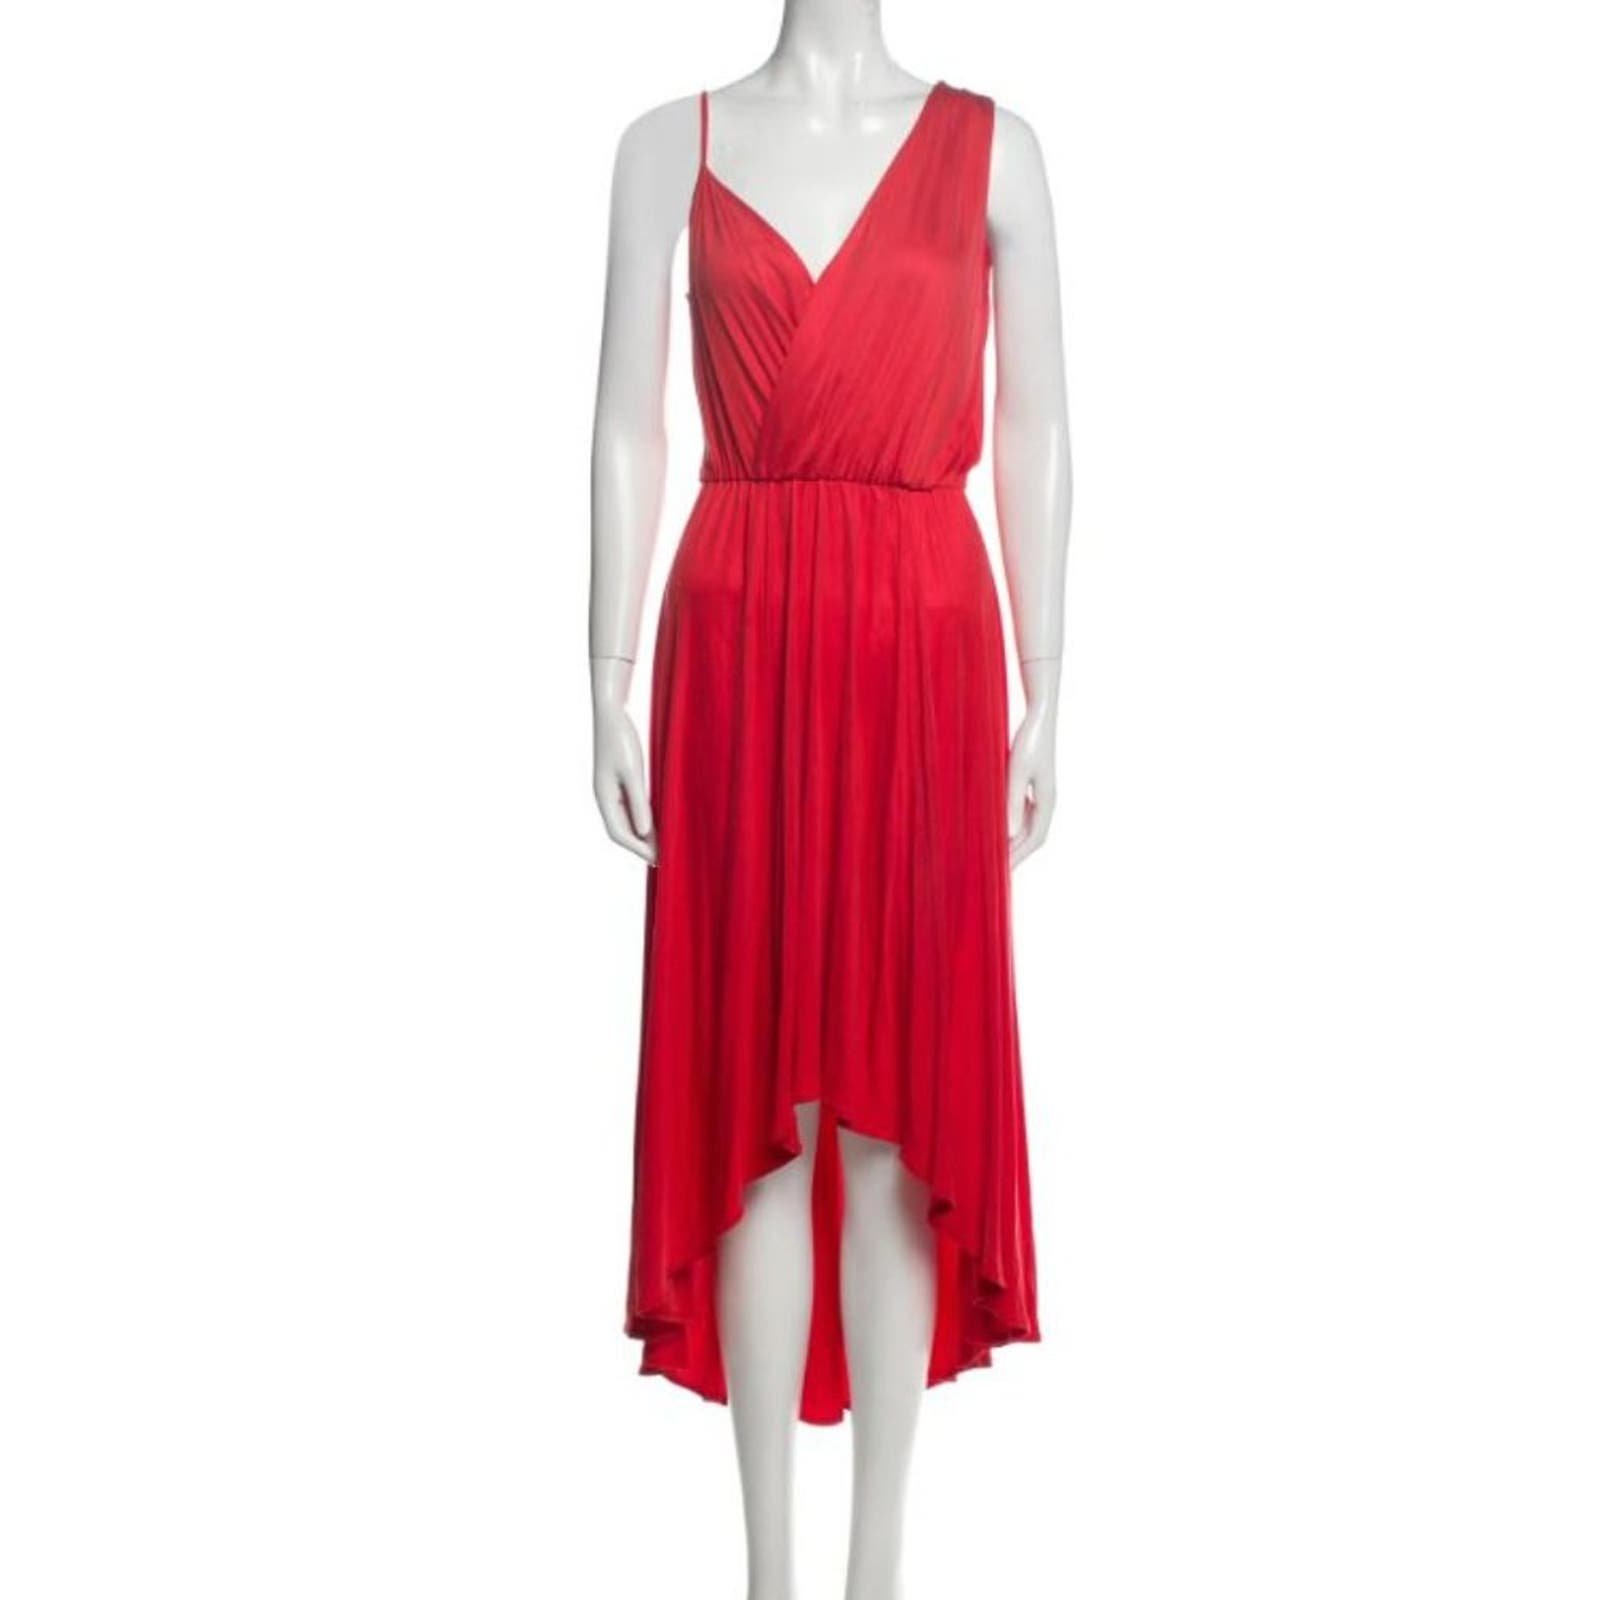 Rebecca Minkoff 100% Silk Red Dress Flowy Sexy c0y9DOuC